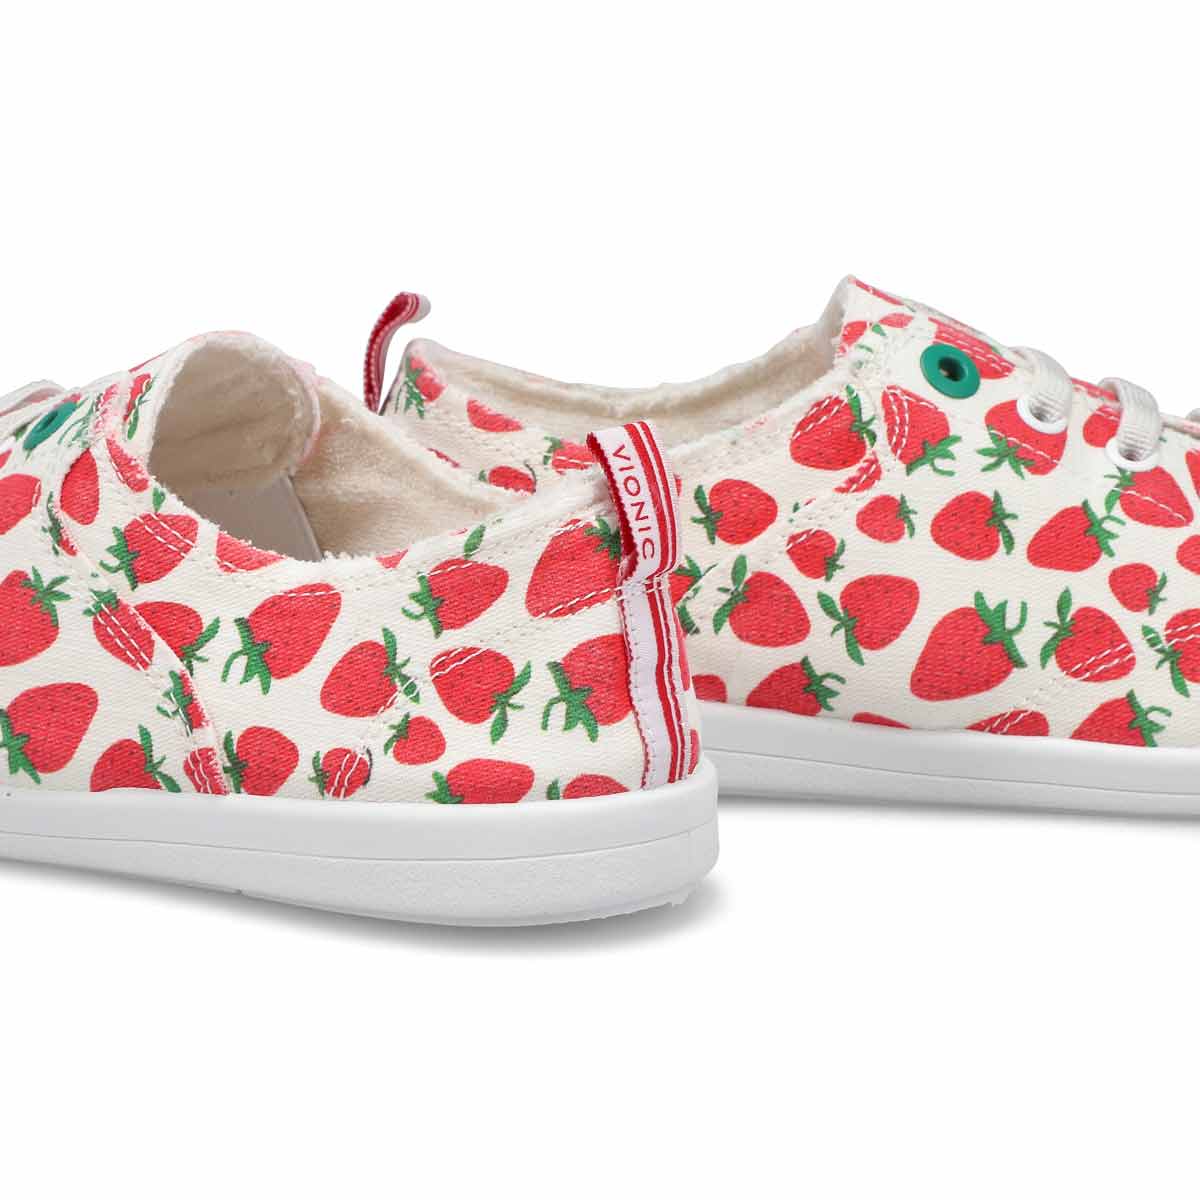 Women's Venice Pismo Sneaker - Strawberry